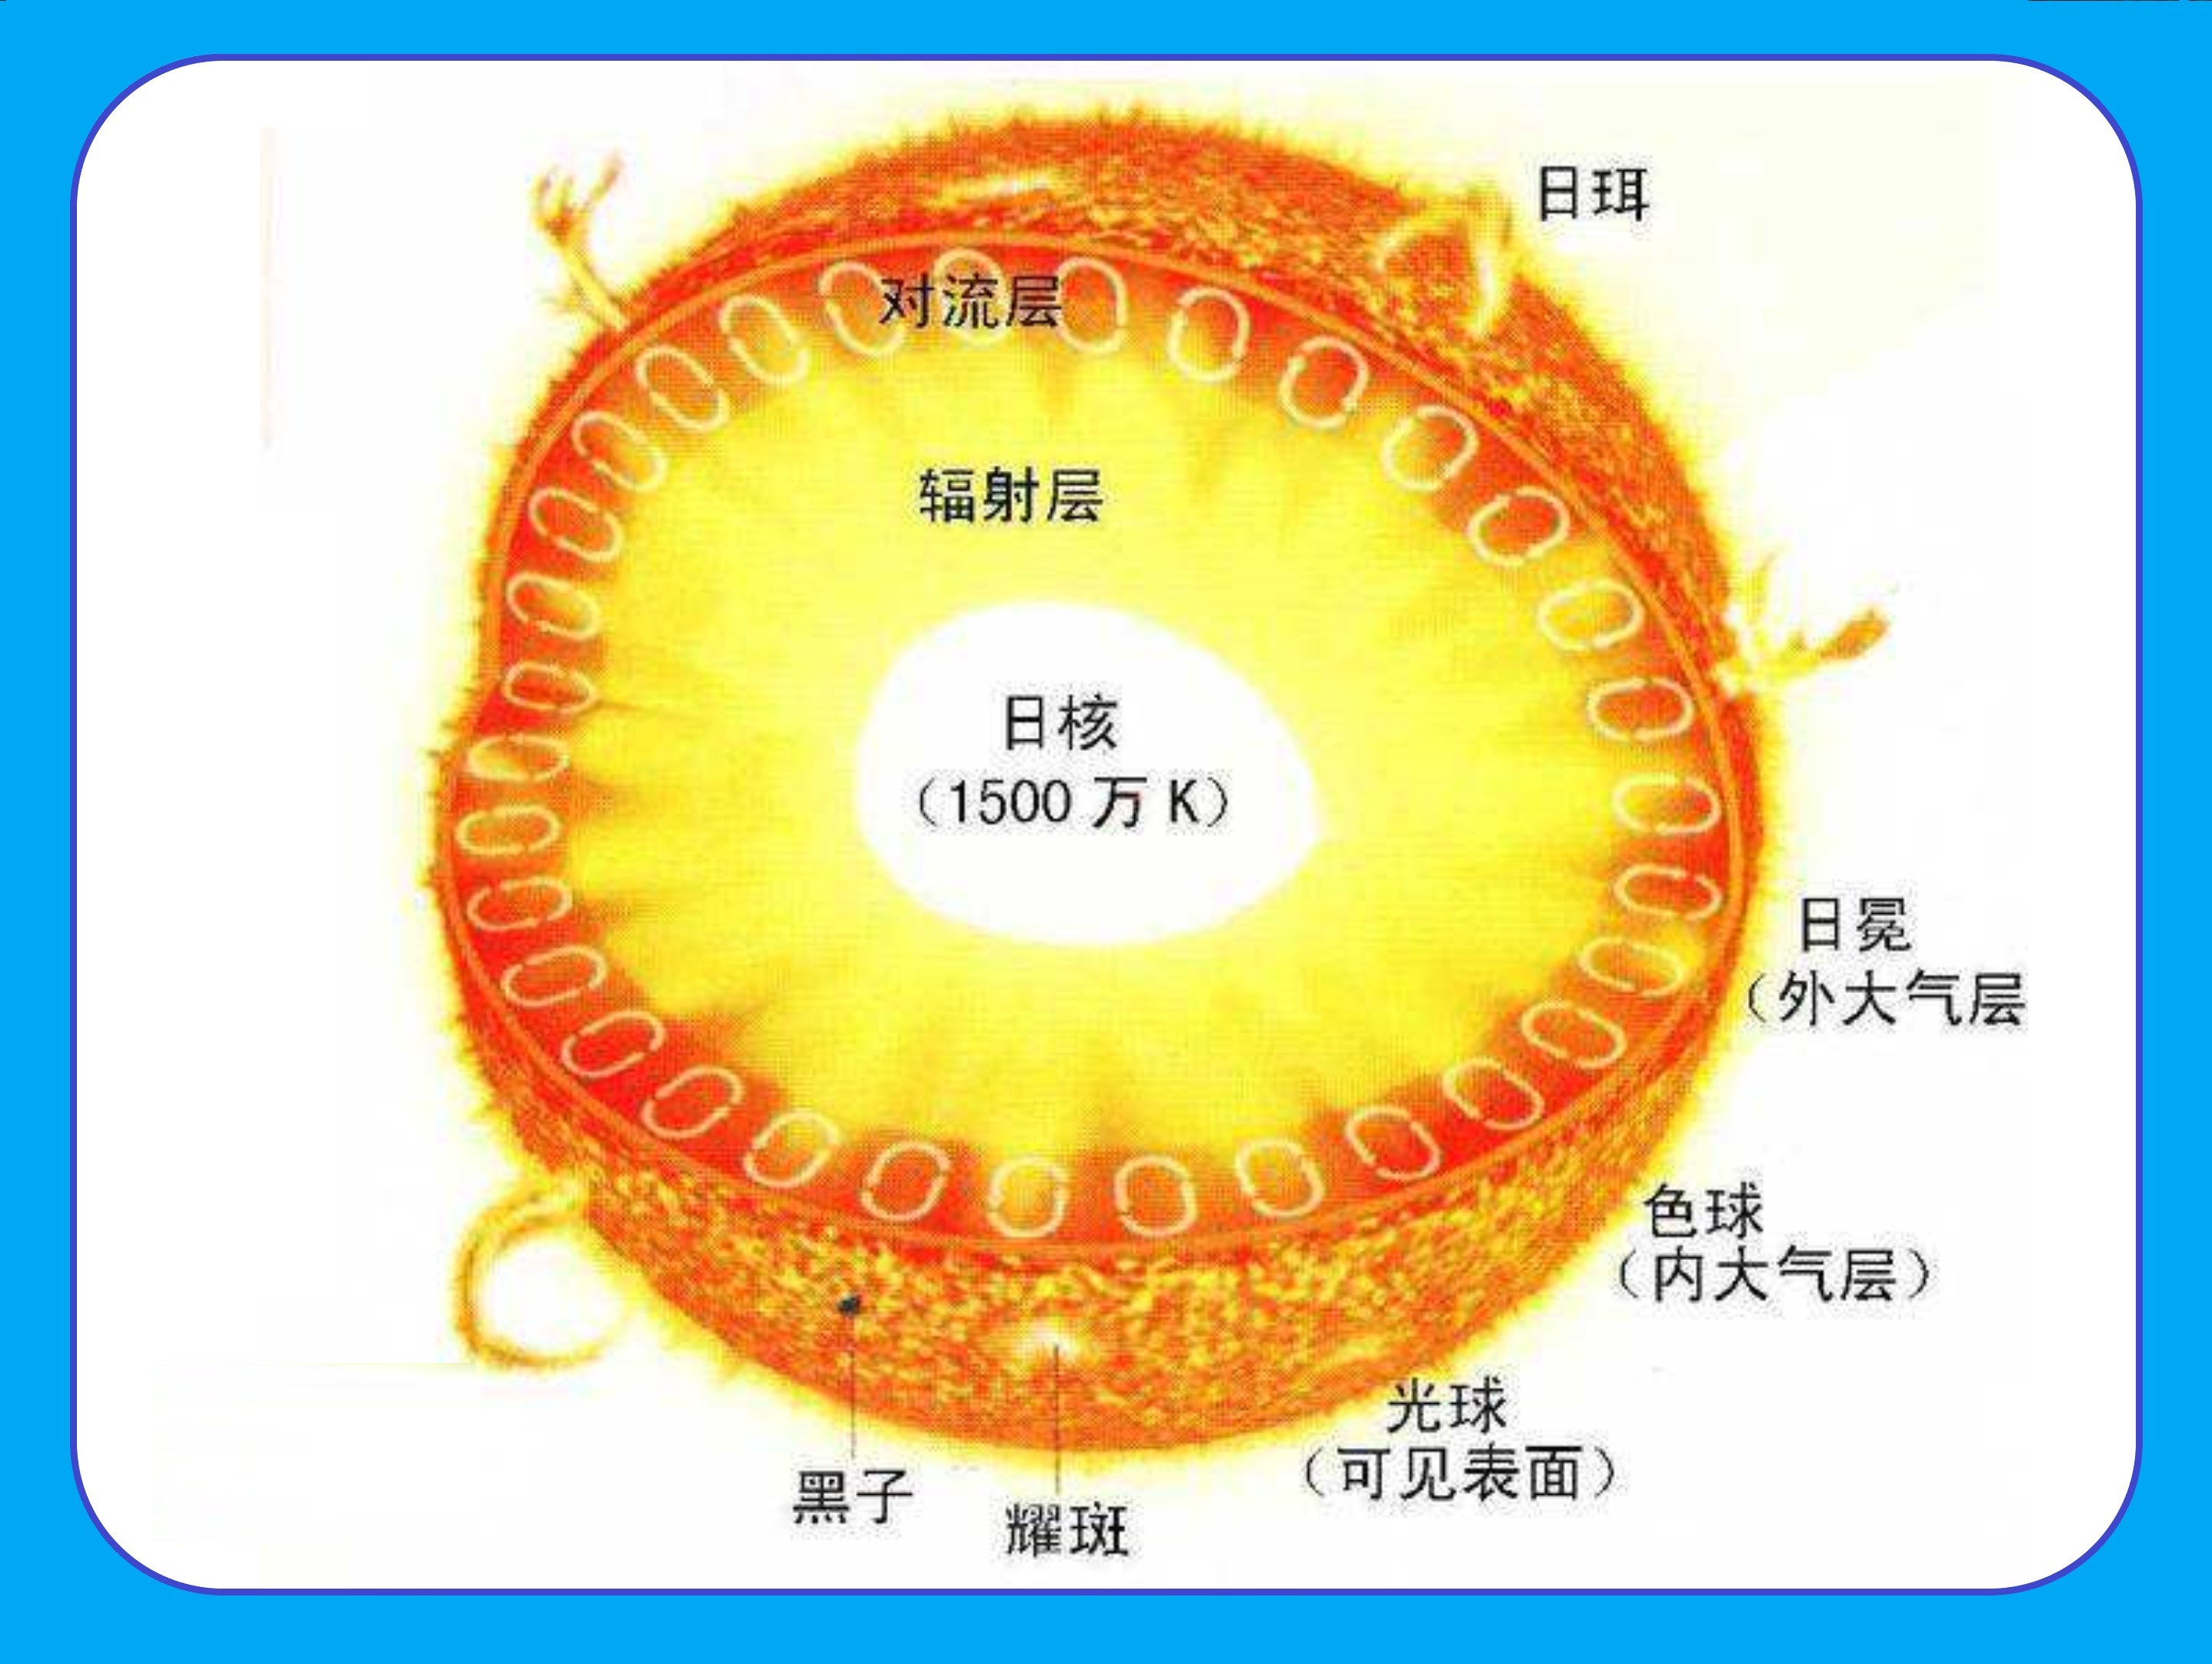 太阳分层结构图图片